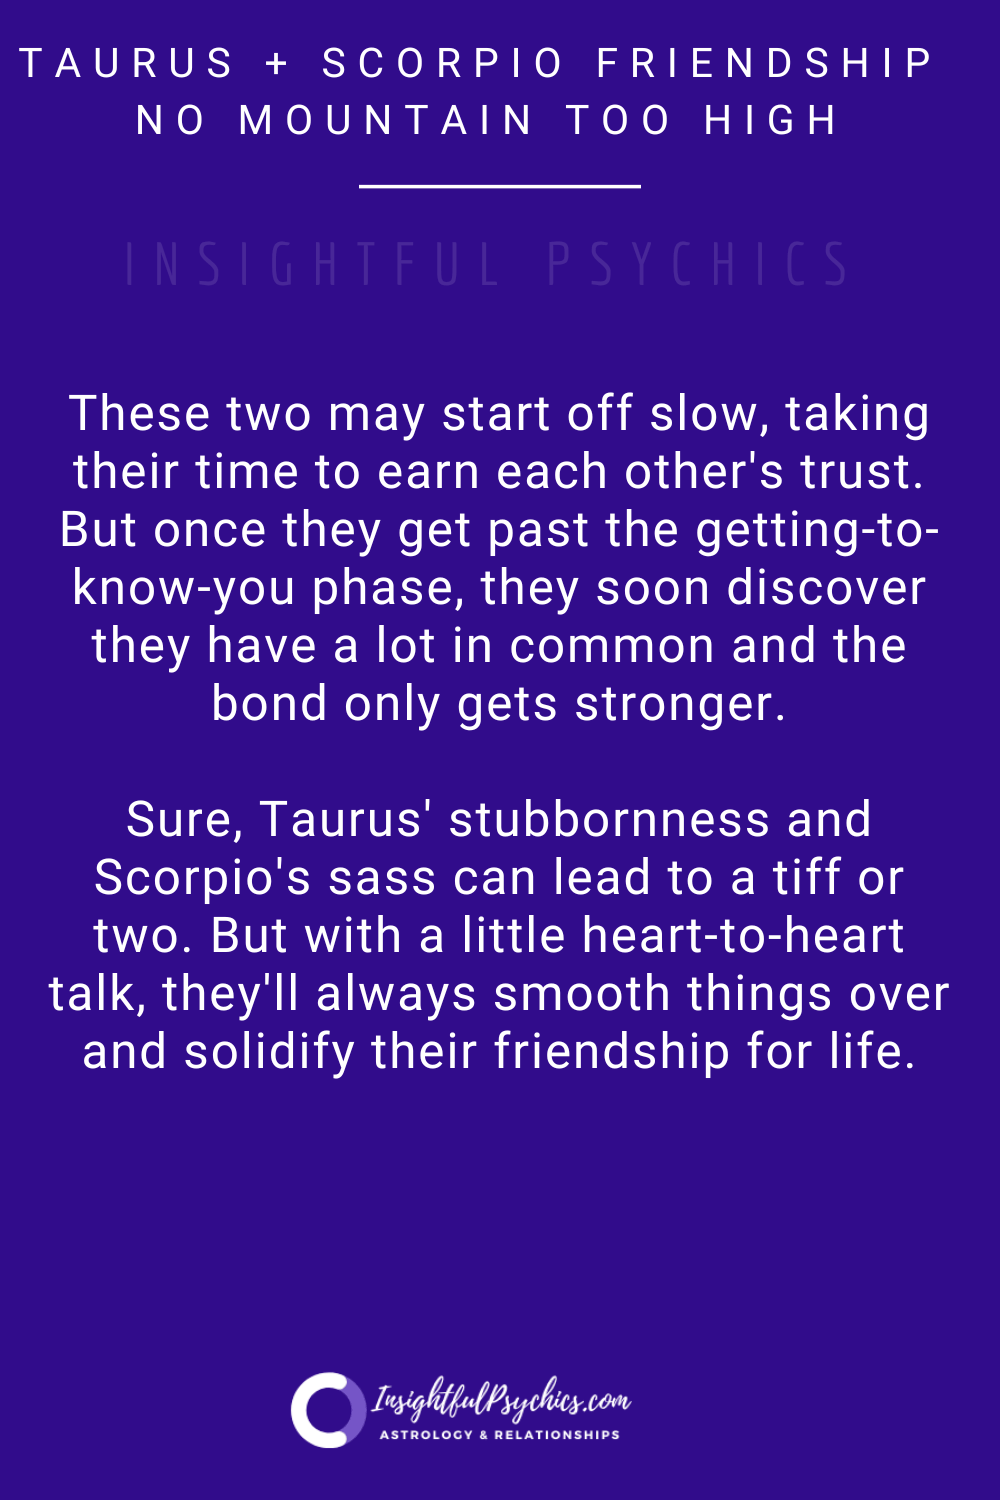 scorpio and taurus friendship